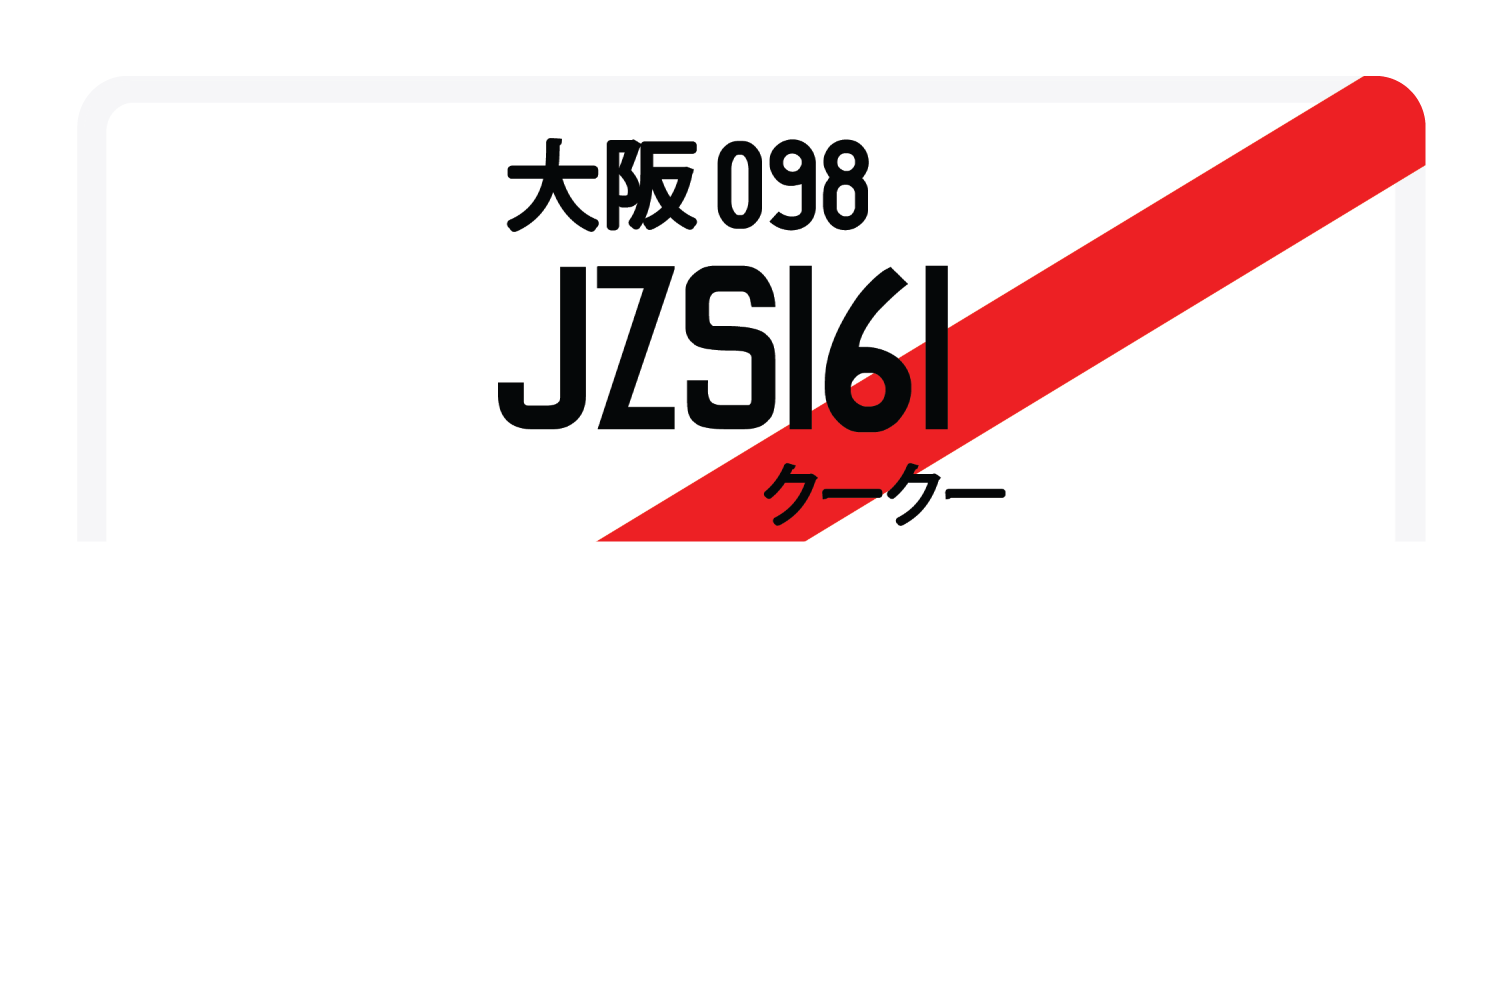 JZS161